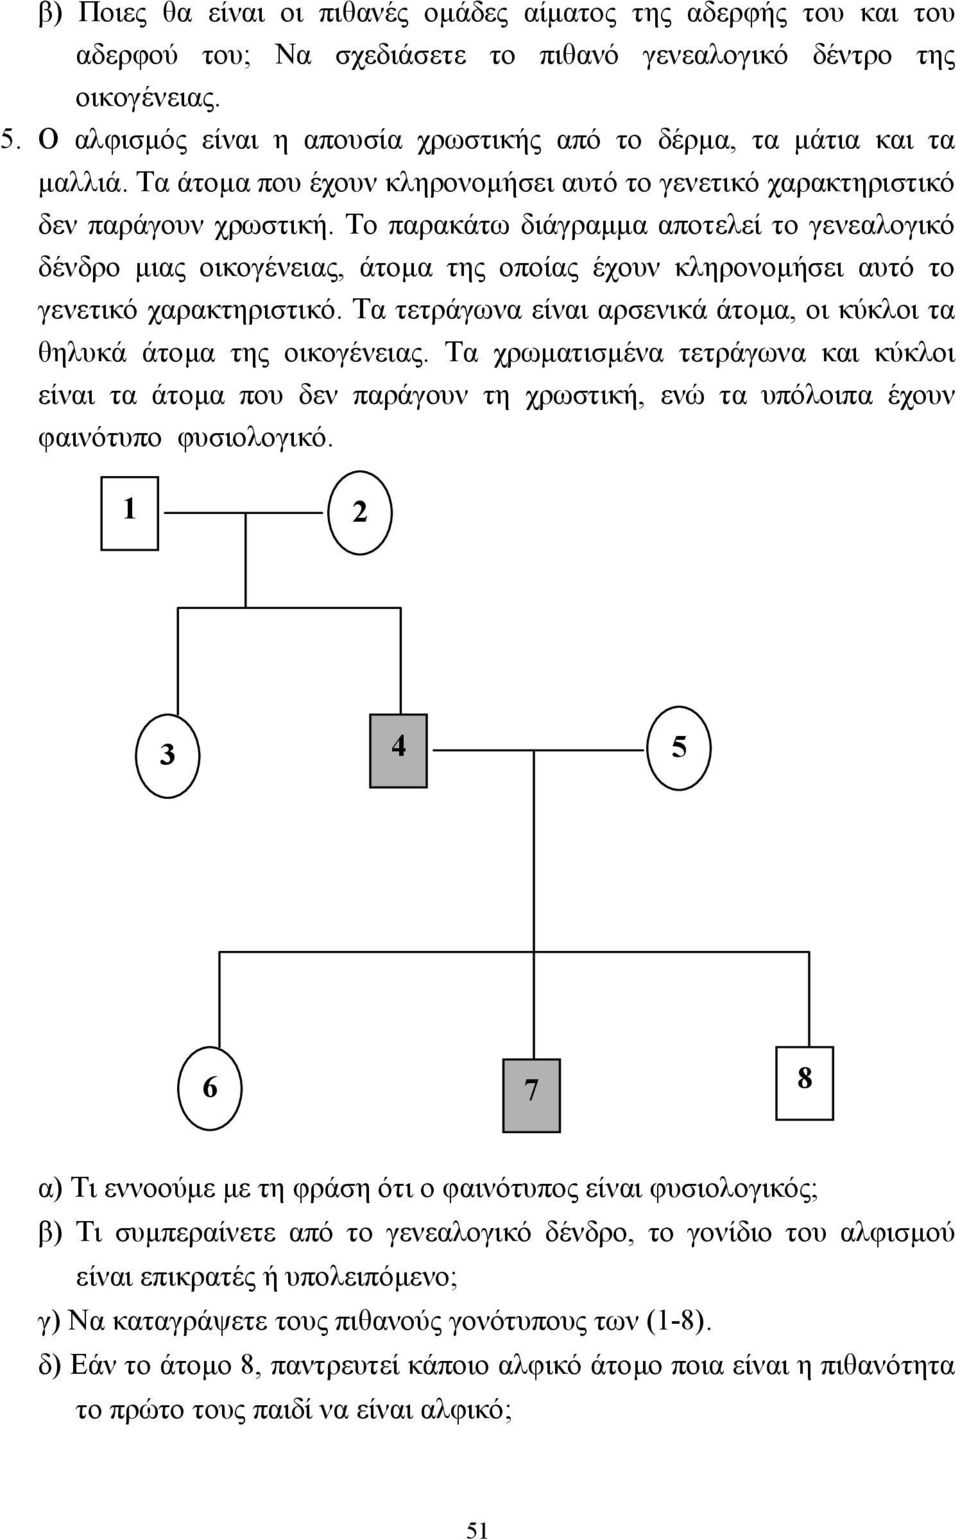 Το παρακάτω διάγραµµα αποτελεί το γενεαλογικό δένδρο µιας οικογένειας, άτοµα της οποίας έχουν κληρονοµήσει αυτό το γενετικό χαρακτηριστικό.